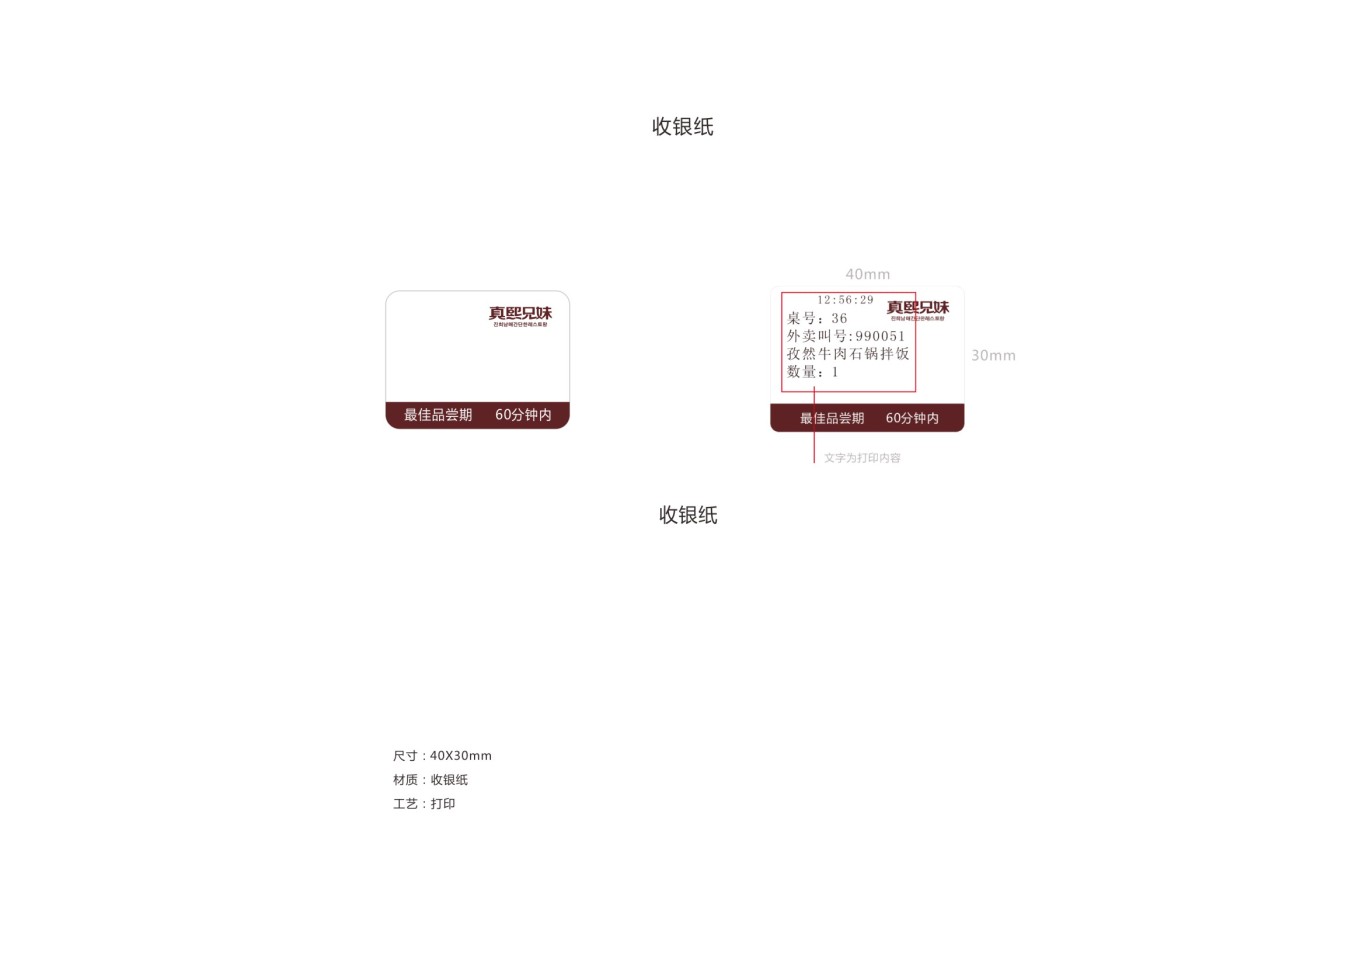 韩式简餐连锁品牌设计图41